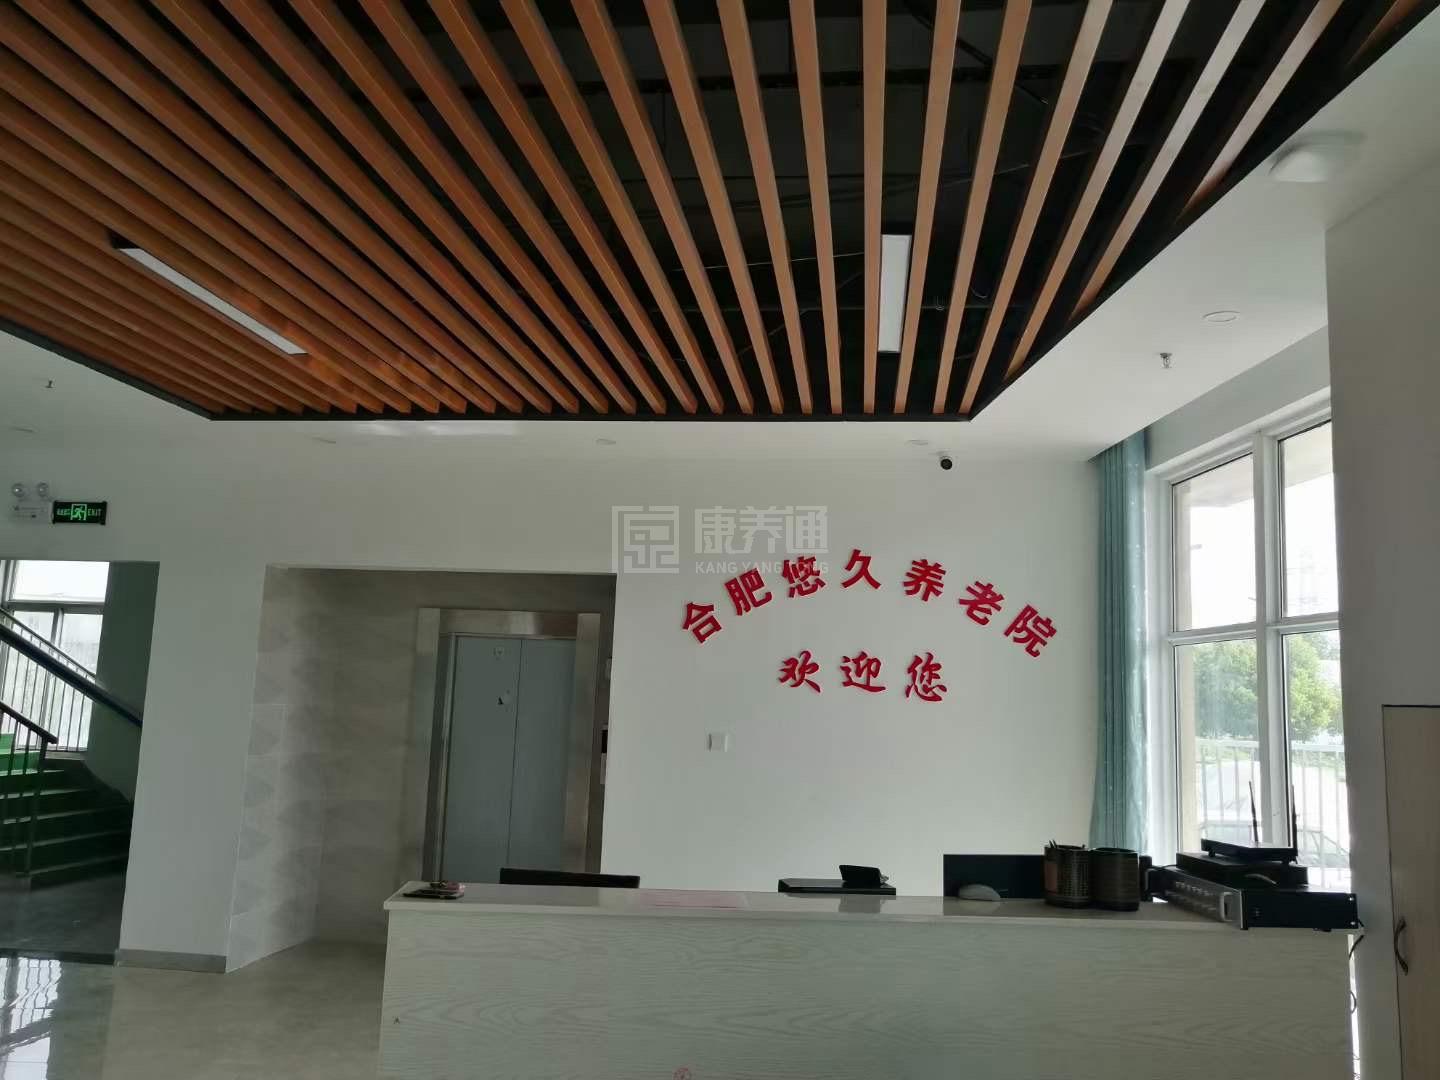 安徽省鑫悠久老年服务有限公司服务项目图4让长者主动而自立地生活